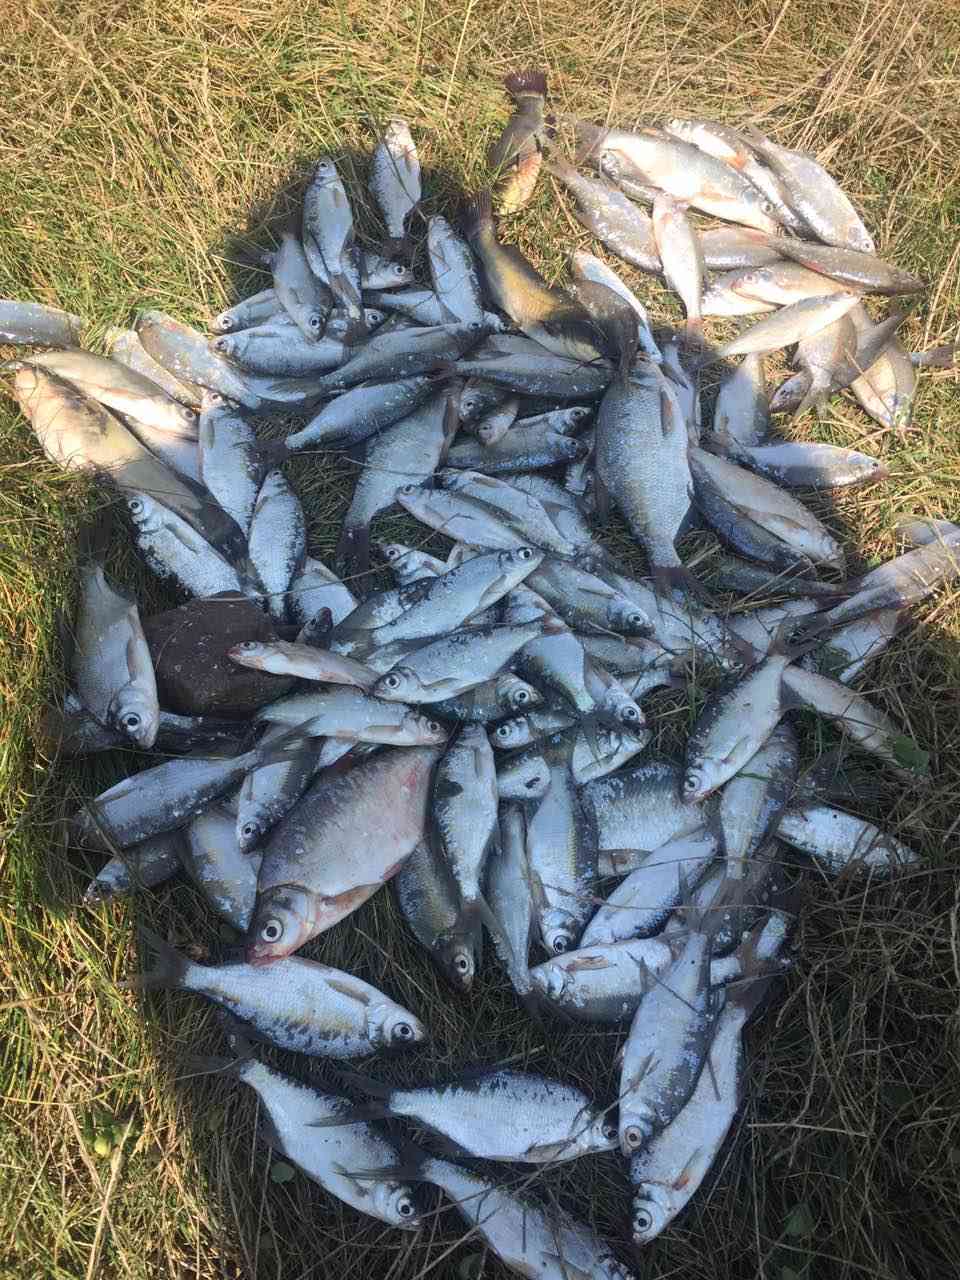 Риболовачка секција корисника ГЦ Јагодина на Гружанском језеру - сл. 2